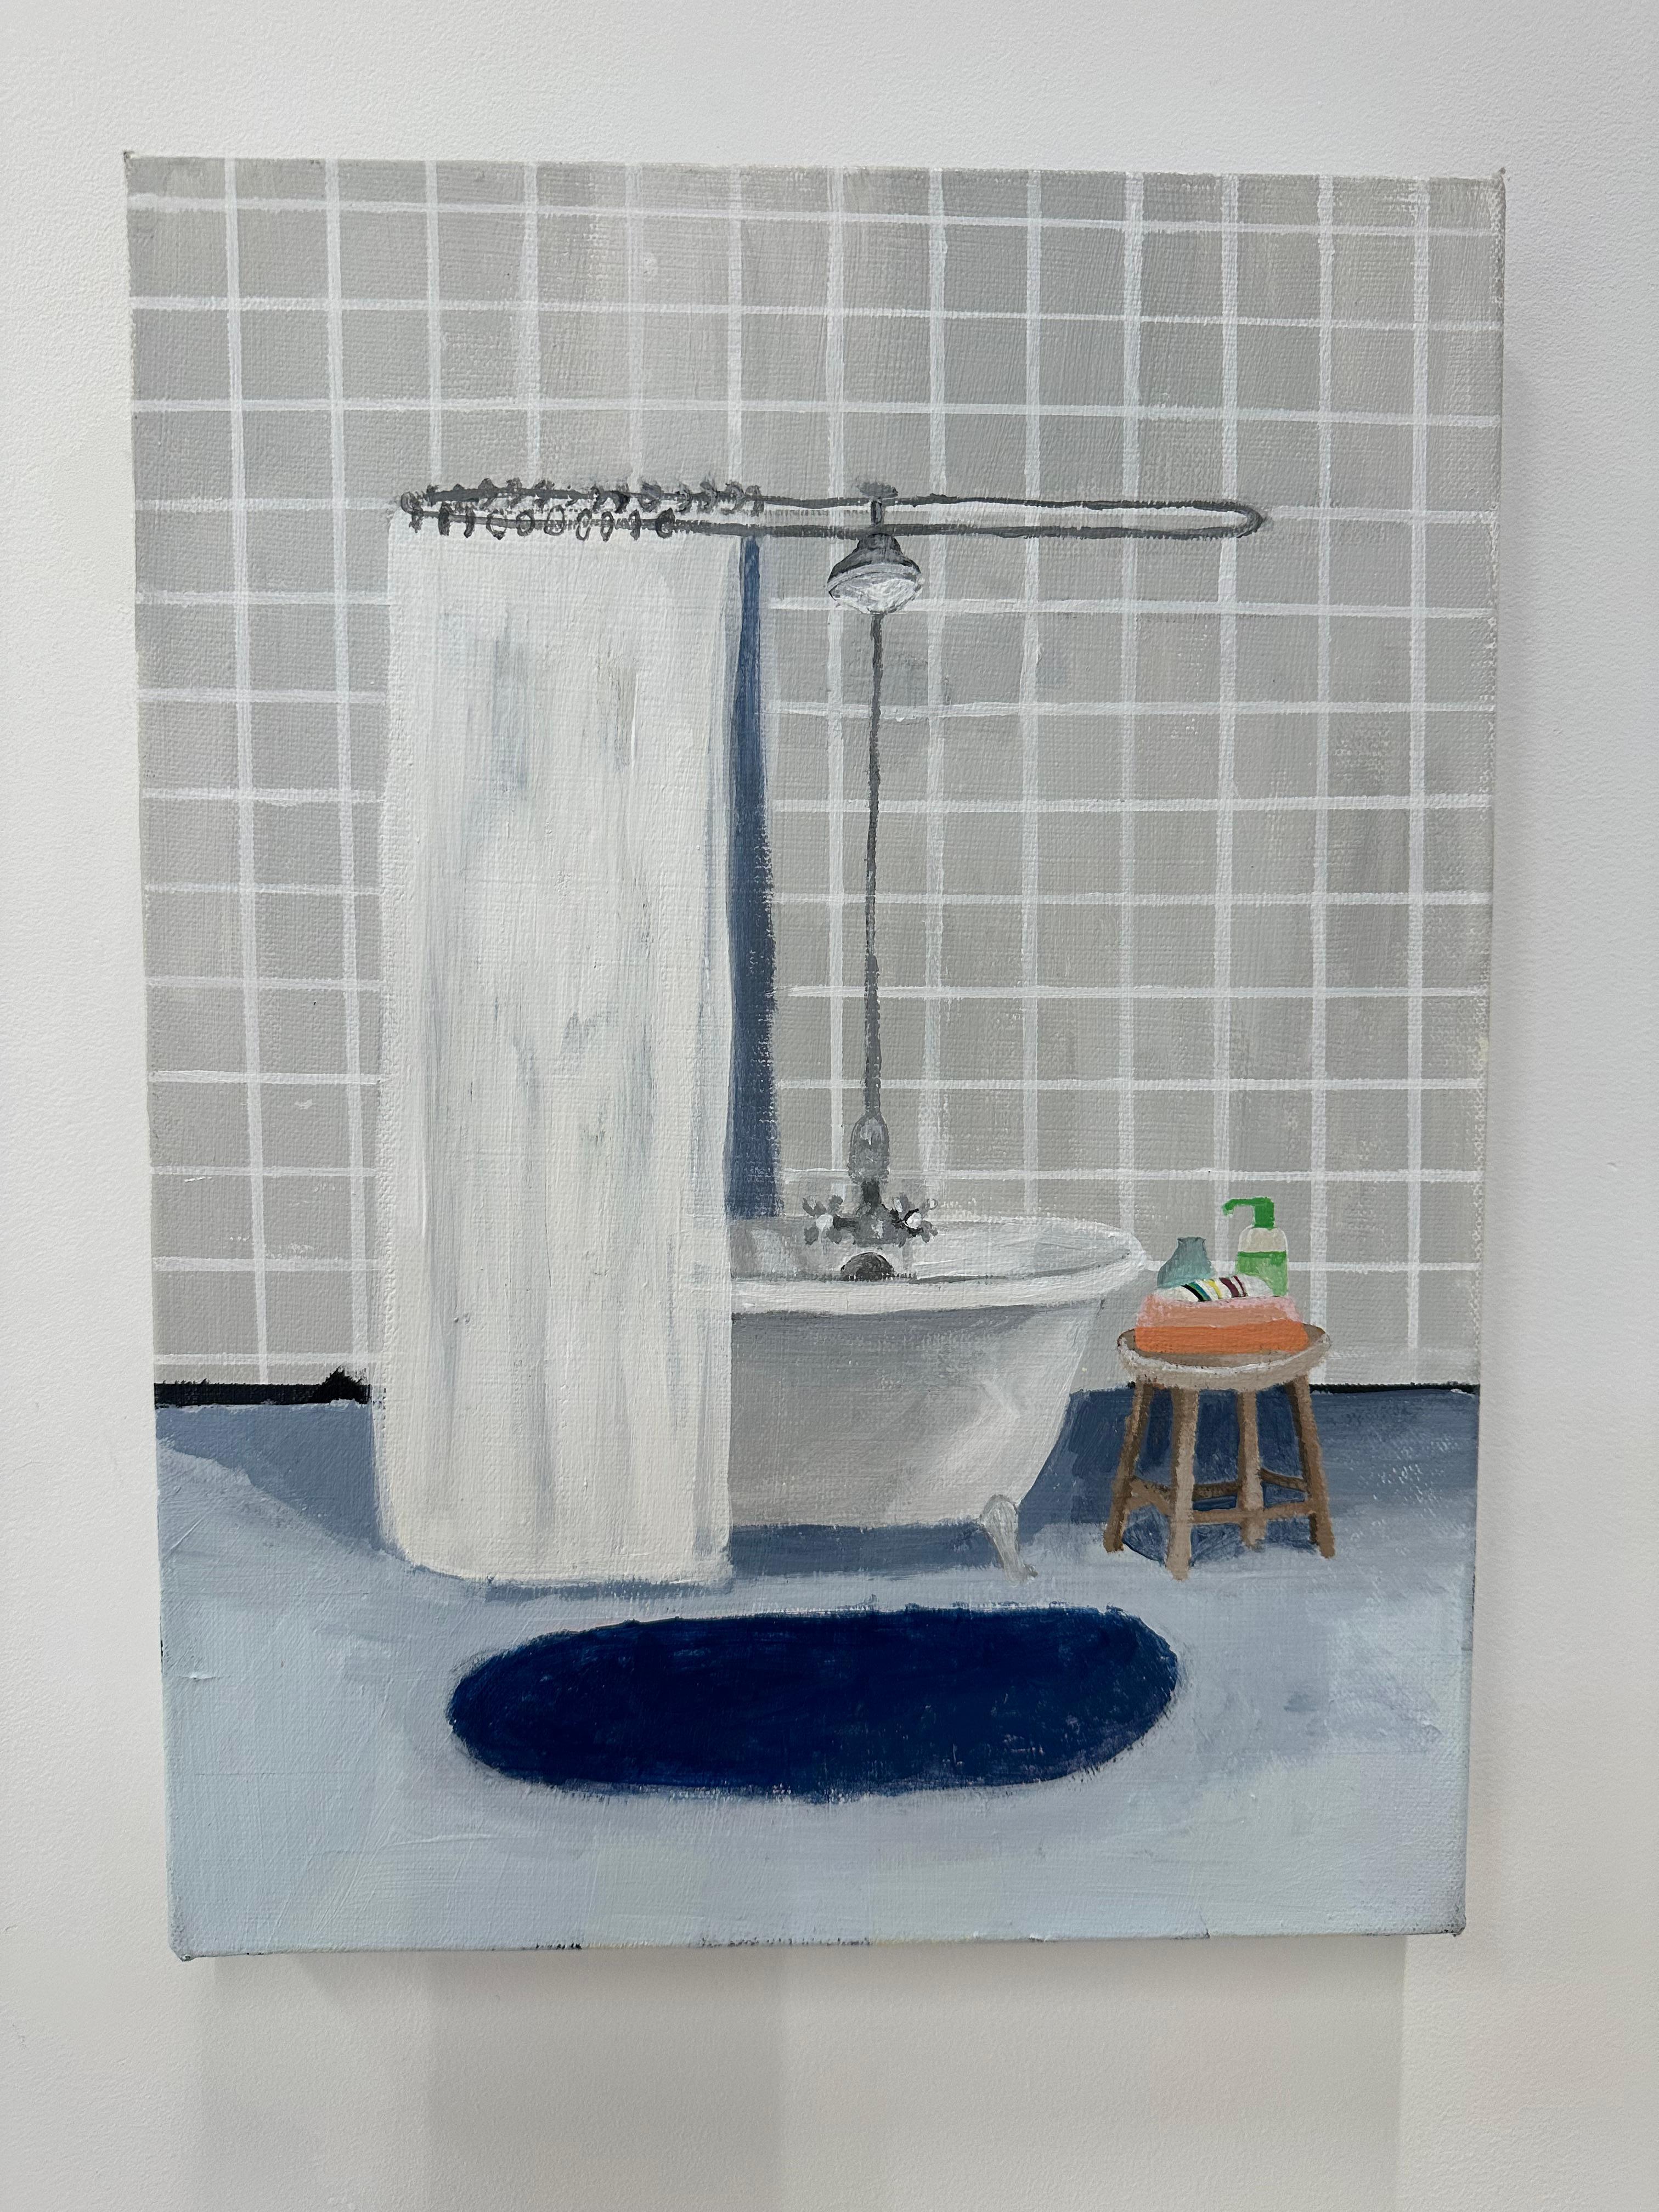 Graues Kachel-Bad, Badezimmer innen mit Kacheln, grüner Seife, kobaltblauer Teppich – Painting von Polly Shindler